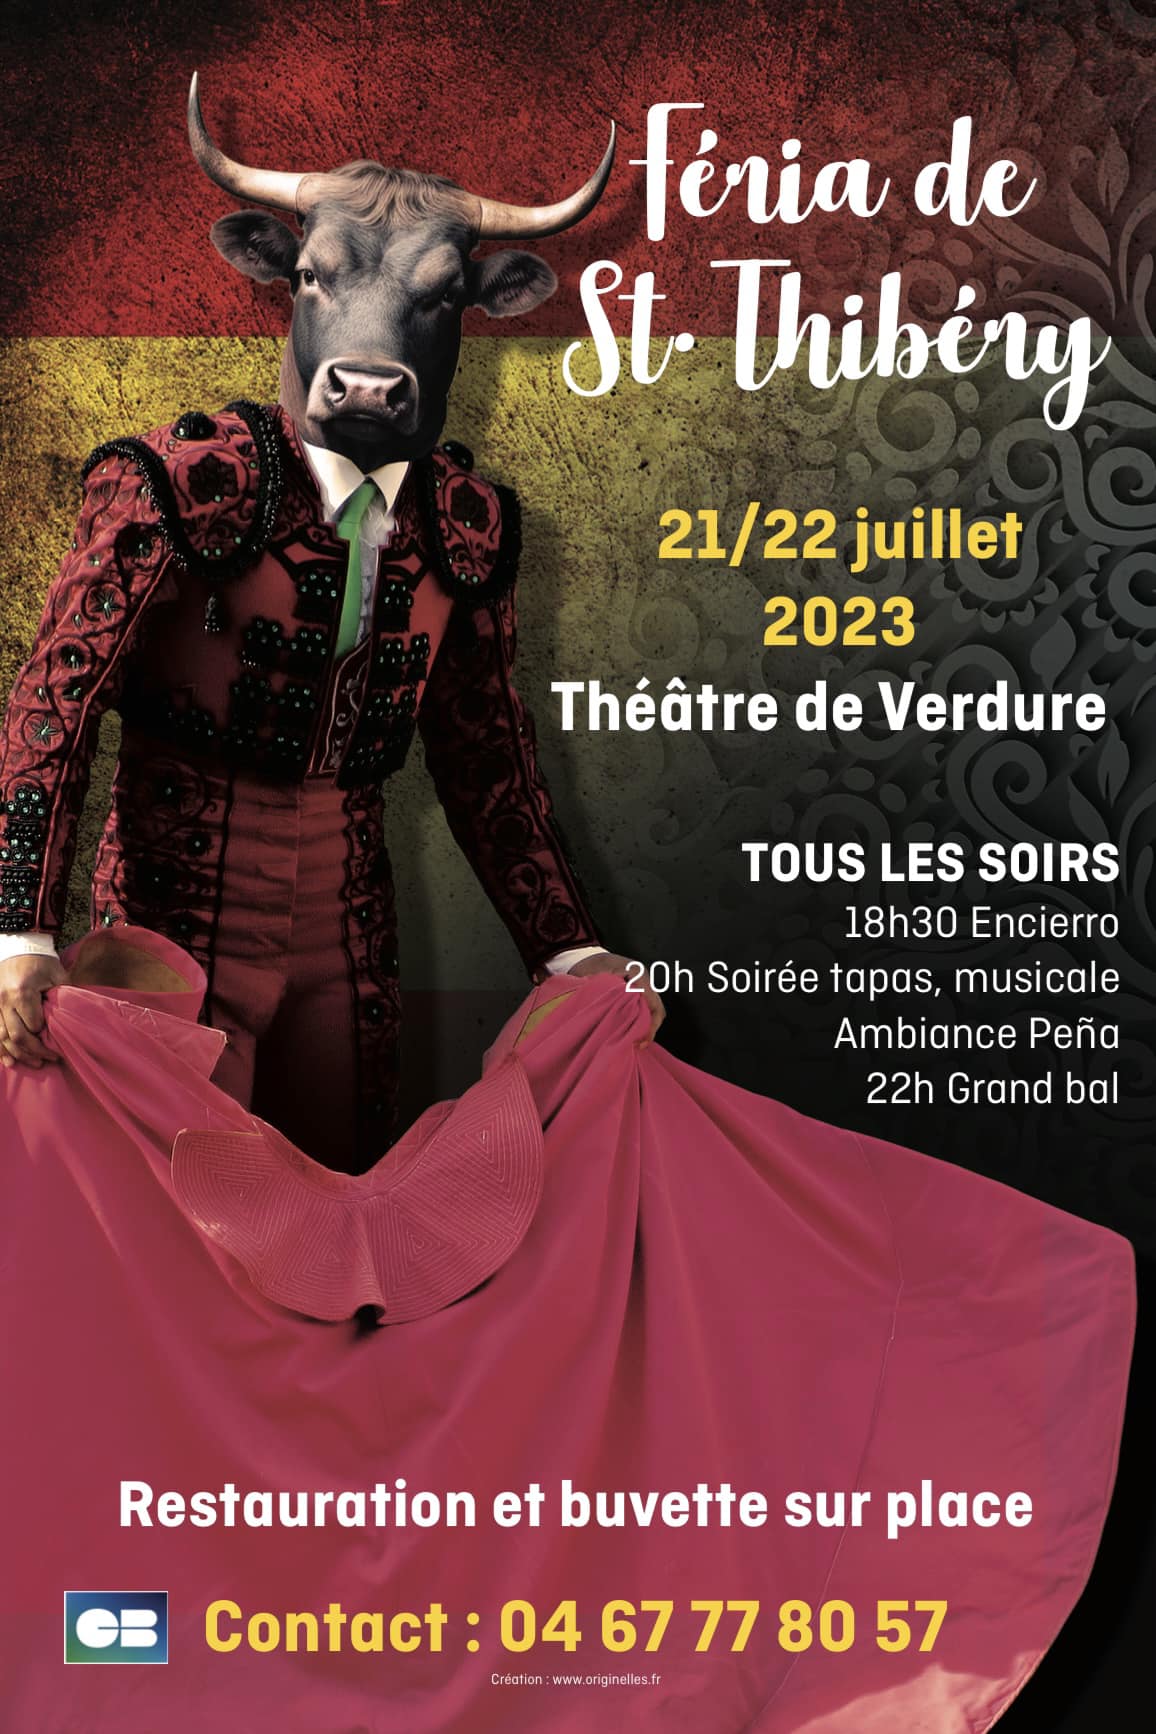 Saint-Thibéry - La Feria de Saint-Thibéry c'est le 21 et 22 juillet 2023